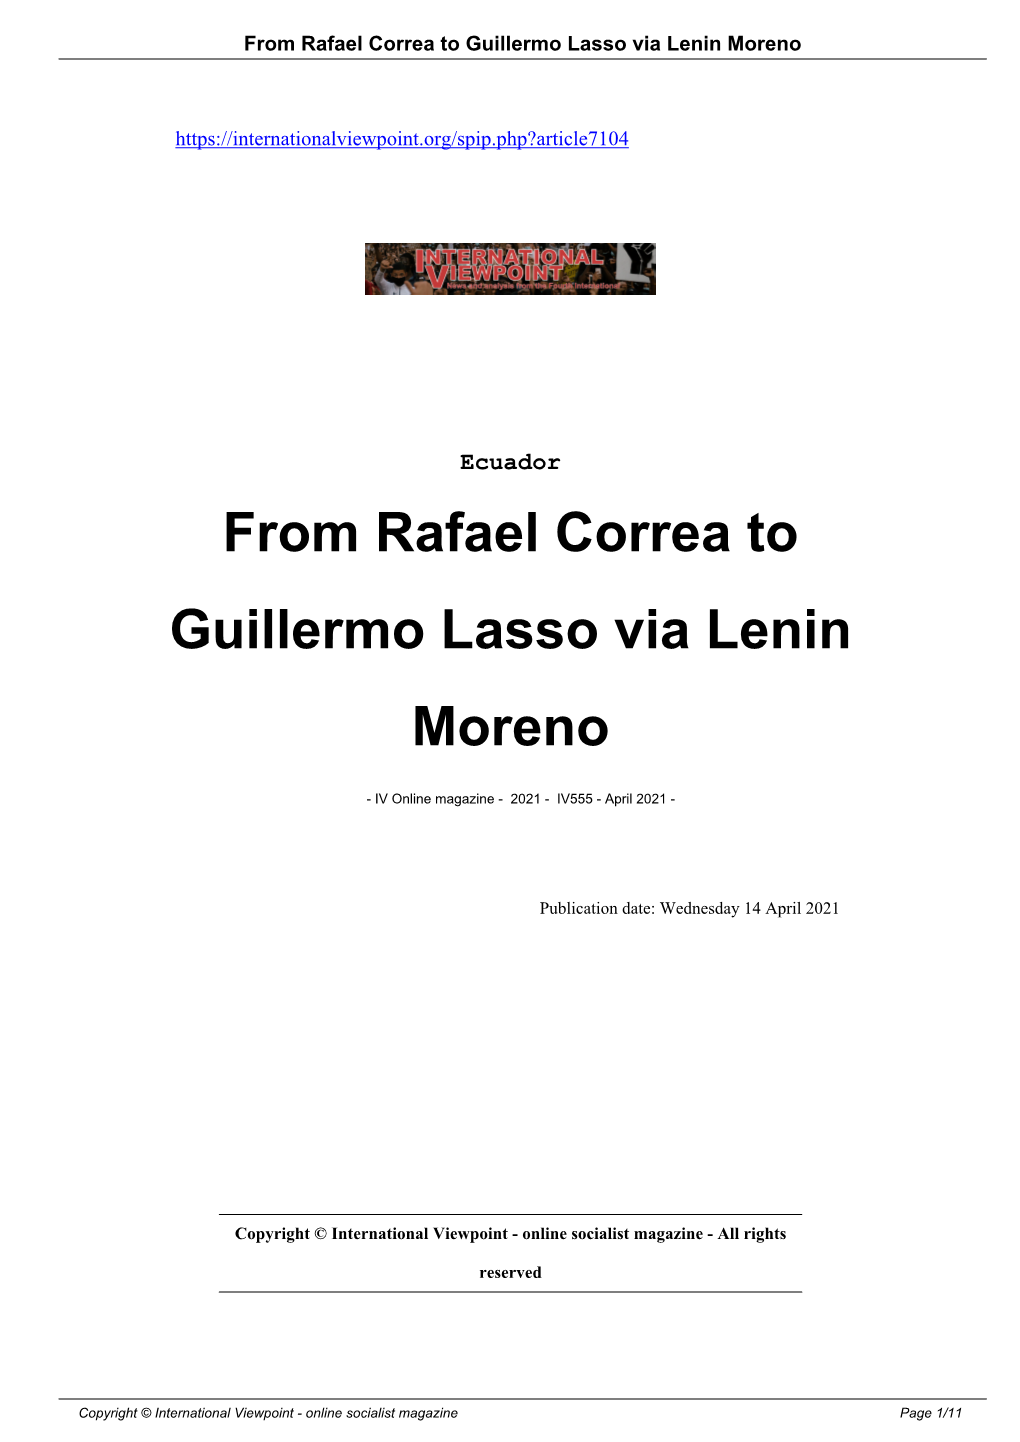 From-Rafael-Correa-To-Guillermo-Lasso-Via-Lenin-Moreno A7104.Pdf